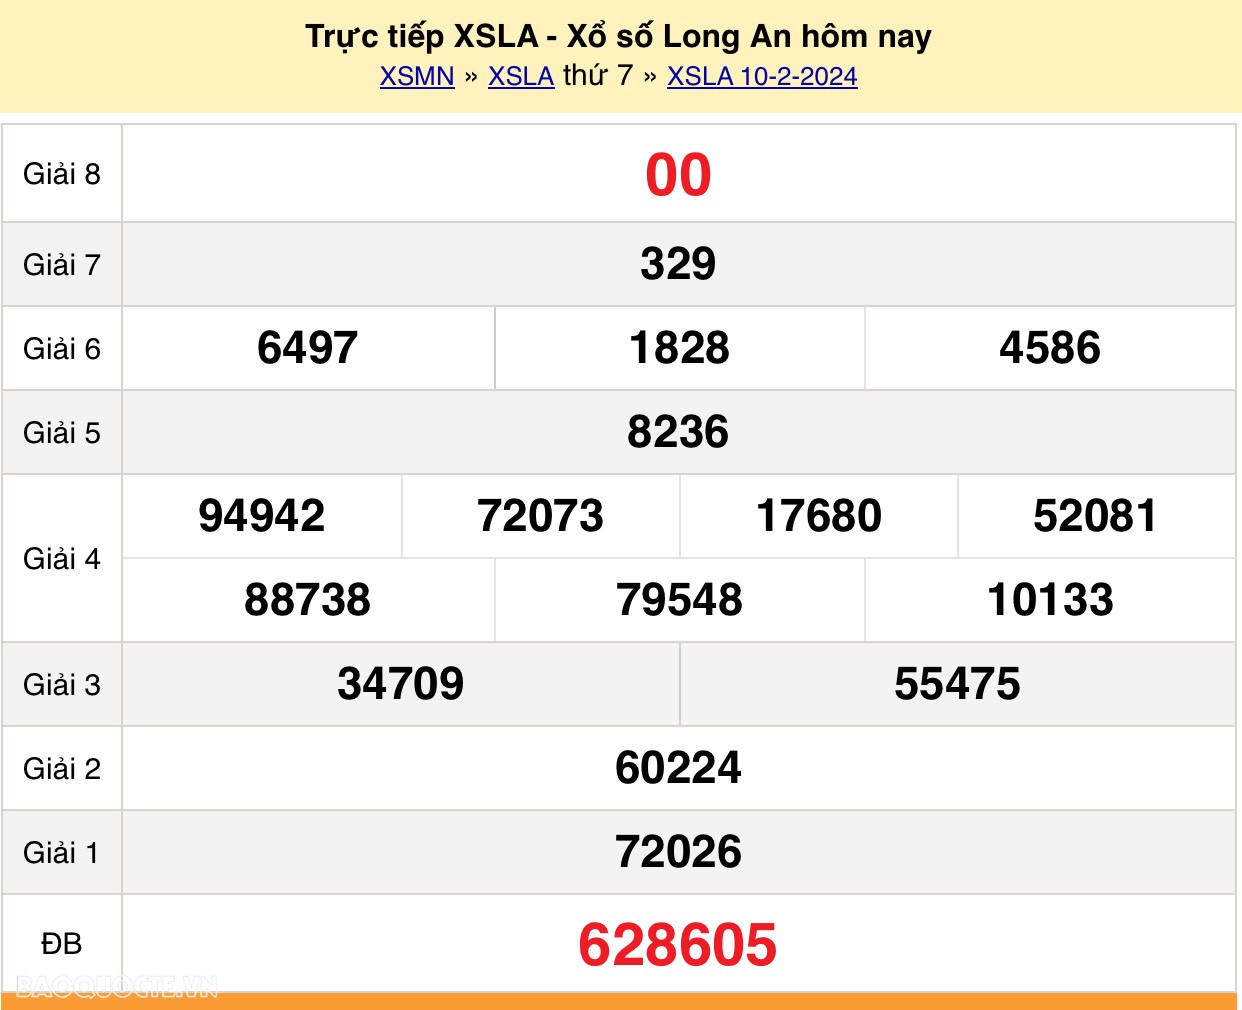 XSLA 17/2, trực tiếp kết quả xổ số Long An hôm nay 17/2/2024 - KQXSLA thứ 7